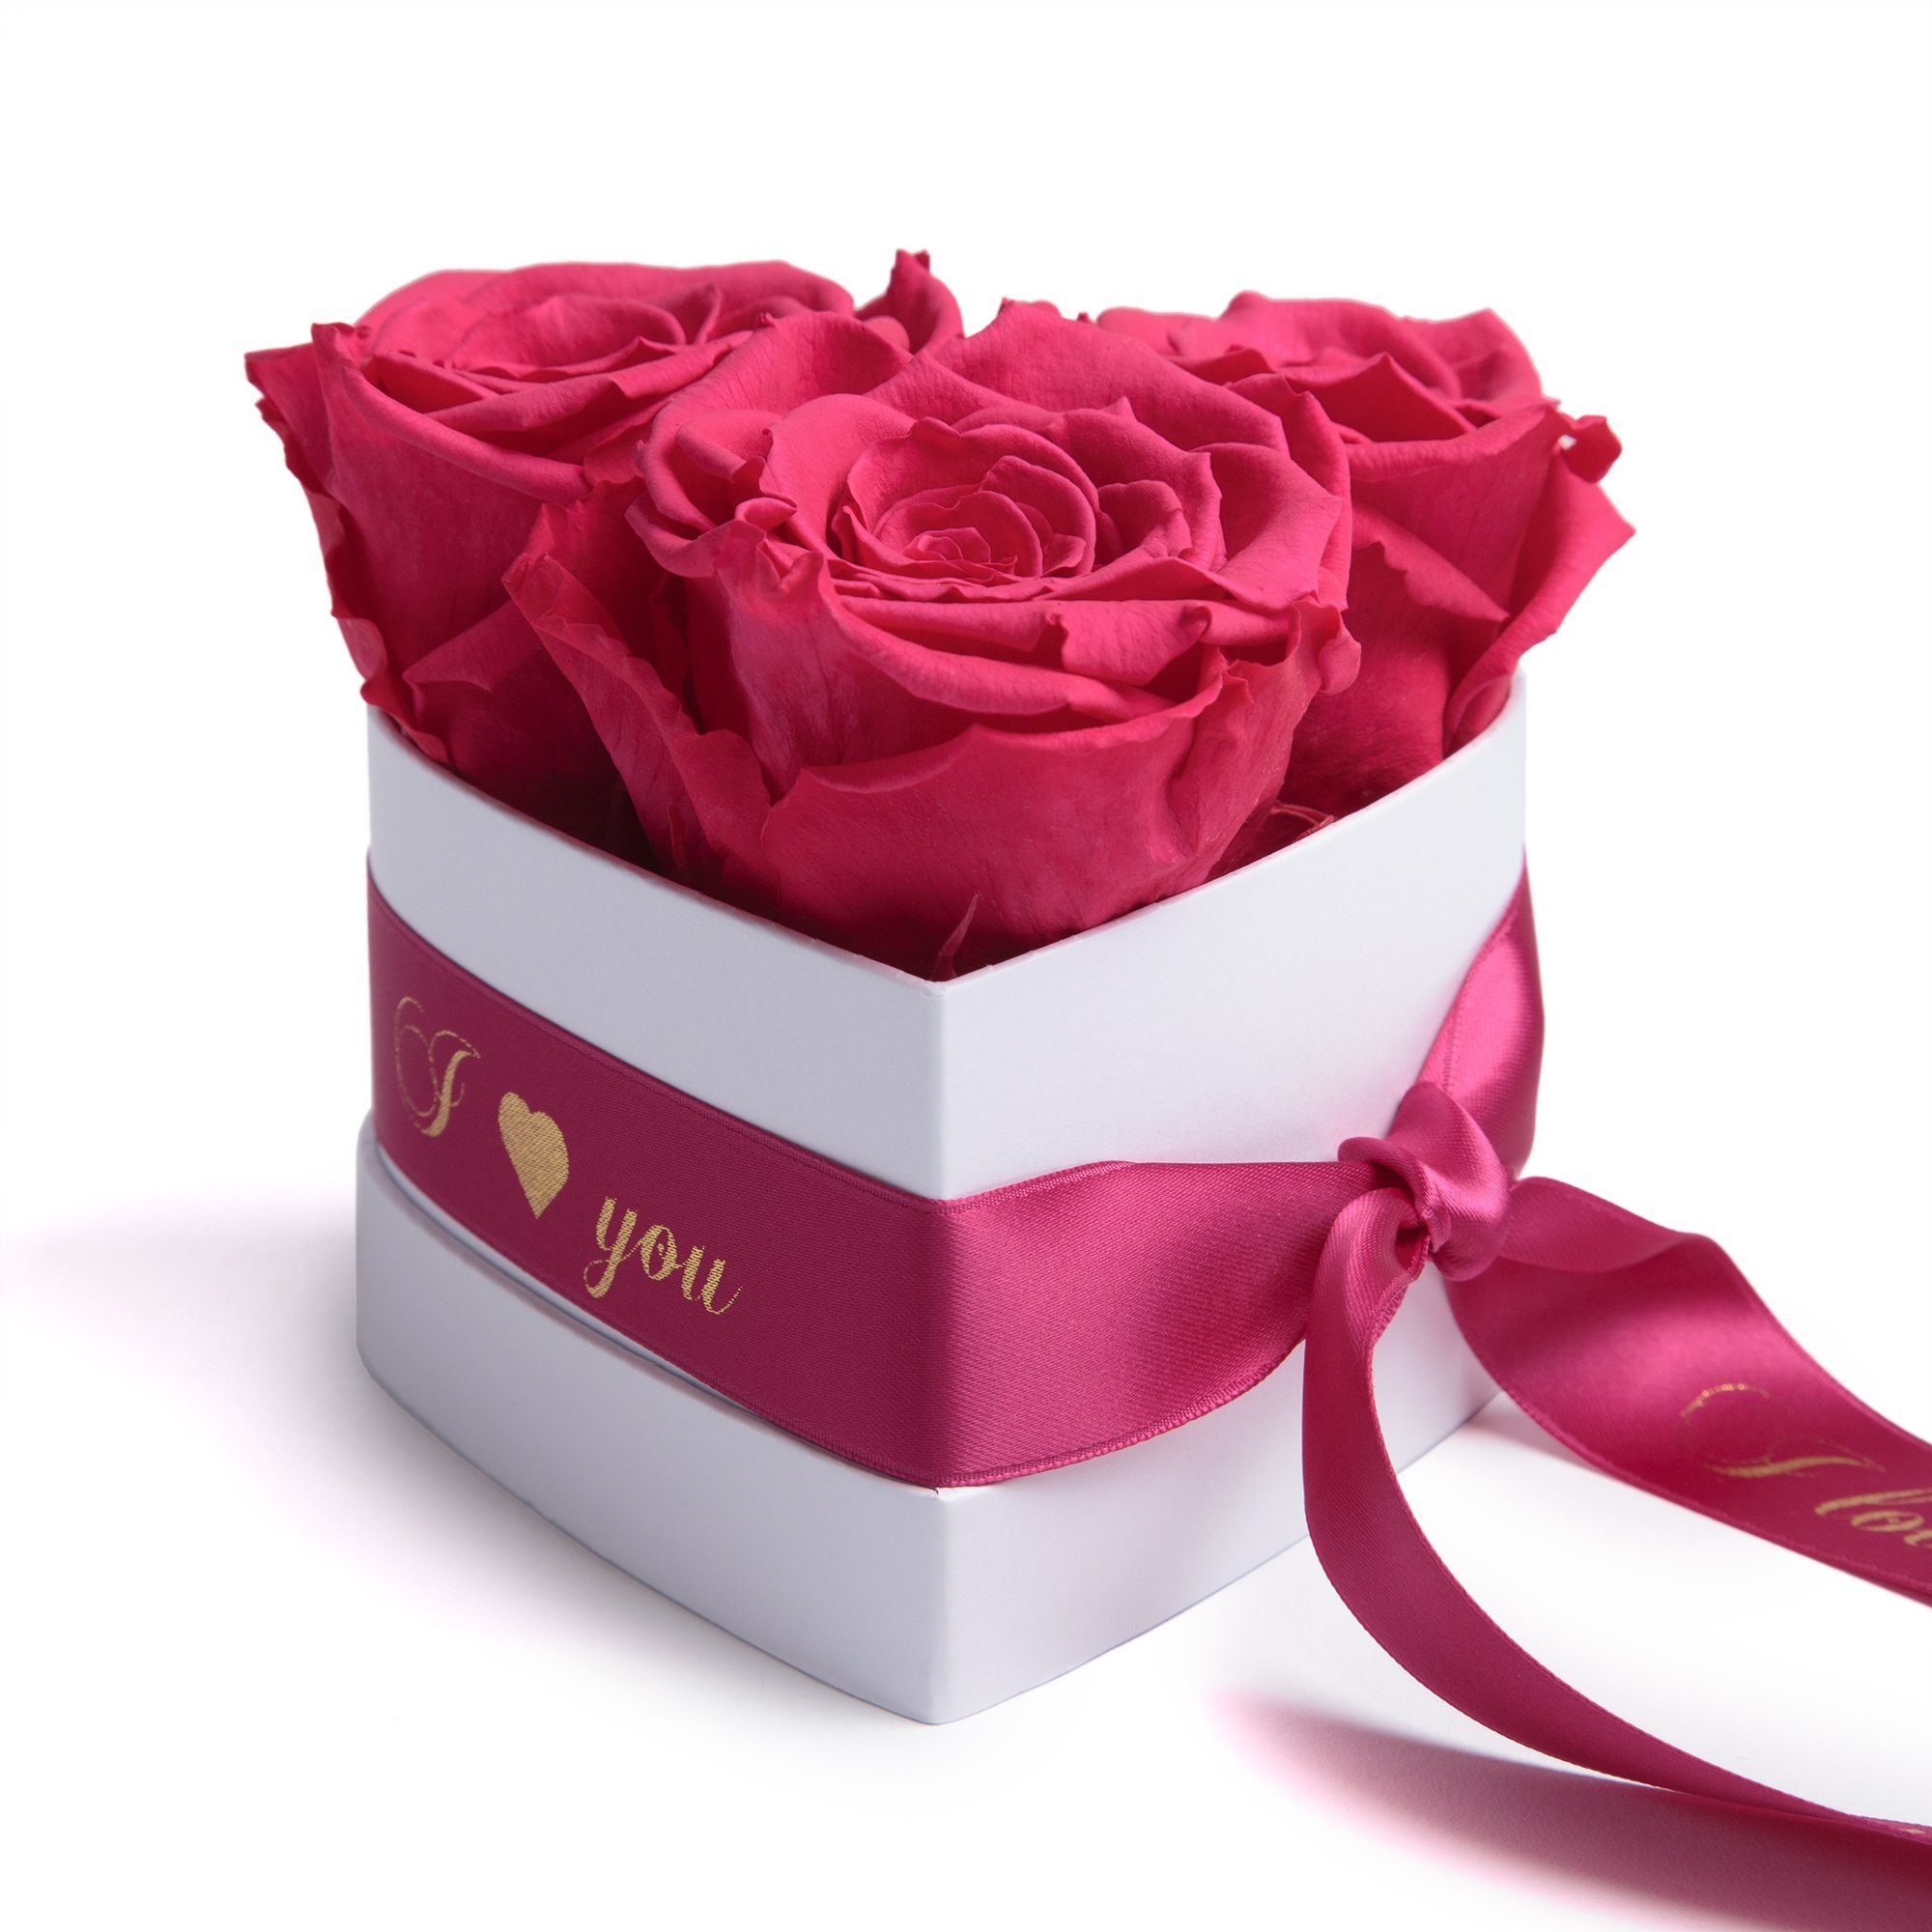 Kunstblume Rosenbox Herz 3 konservierte Infinity Rosen in Box I Love You Rose, ROSEMARIE SCHULZ Heidelberg, Höhe 8.5 cm, Valentinstag Geschenk für Sie Pink